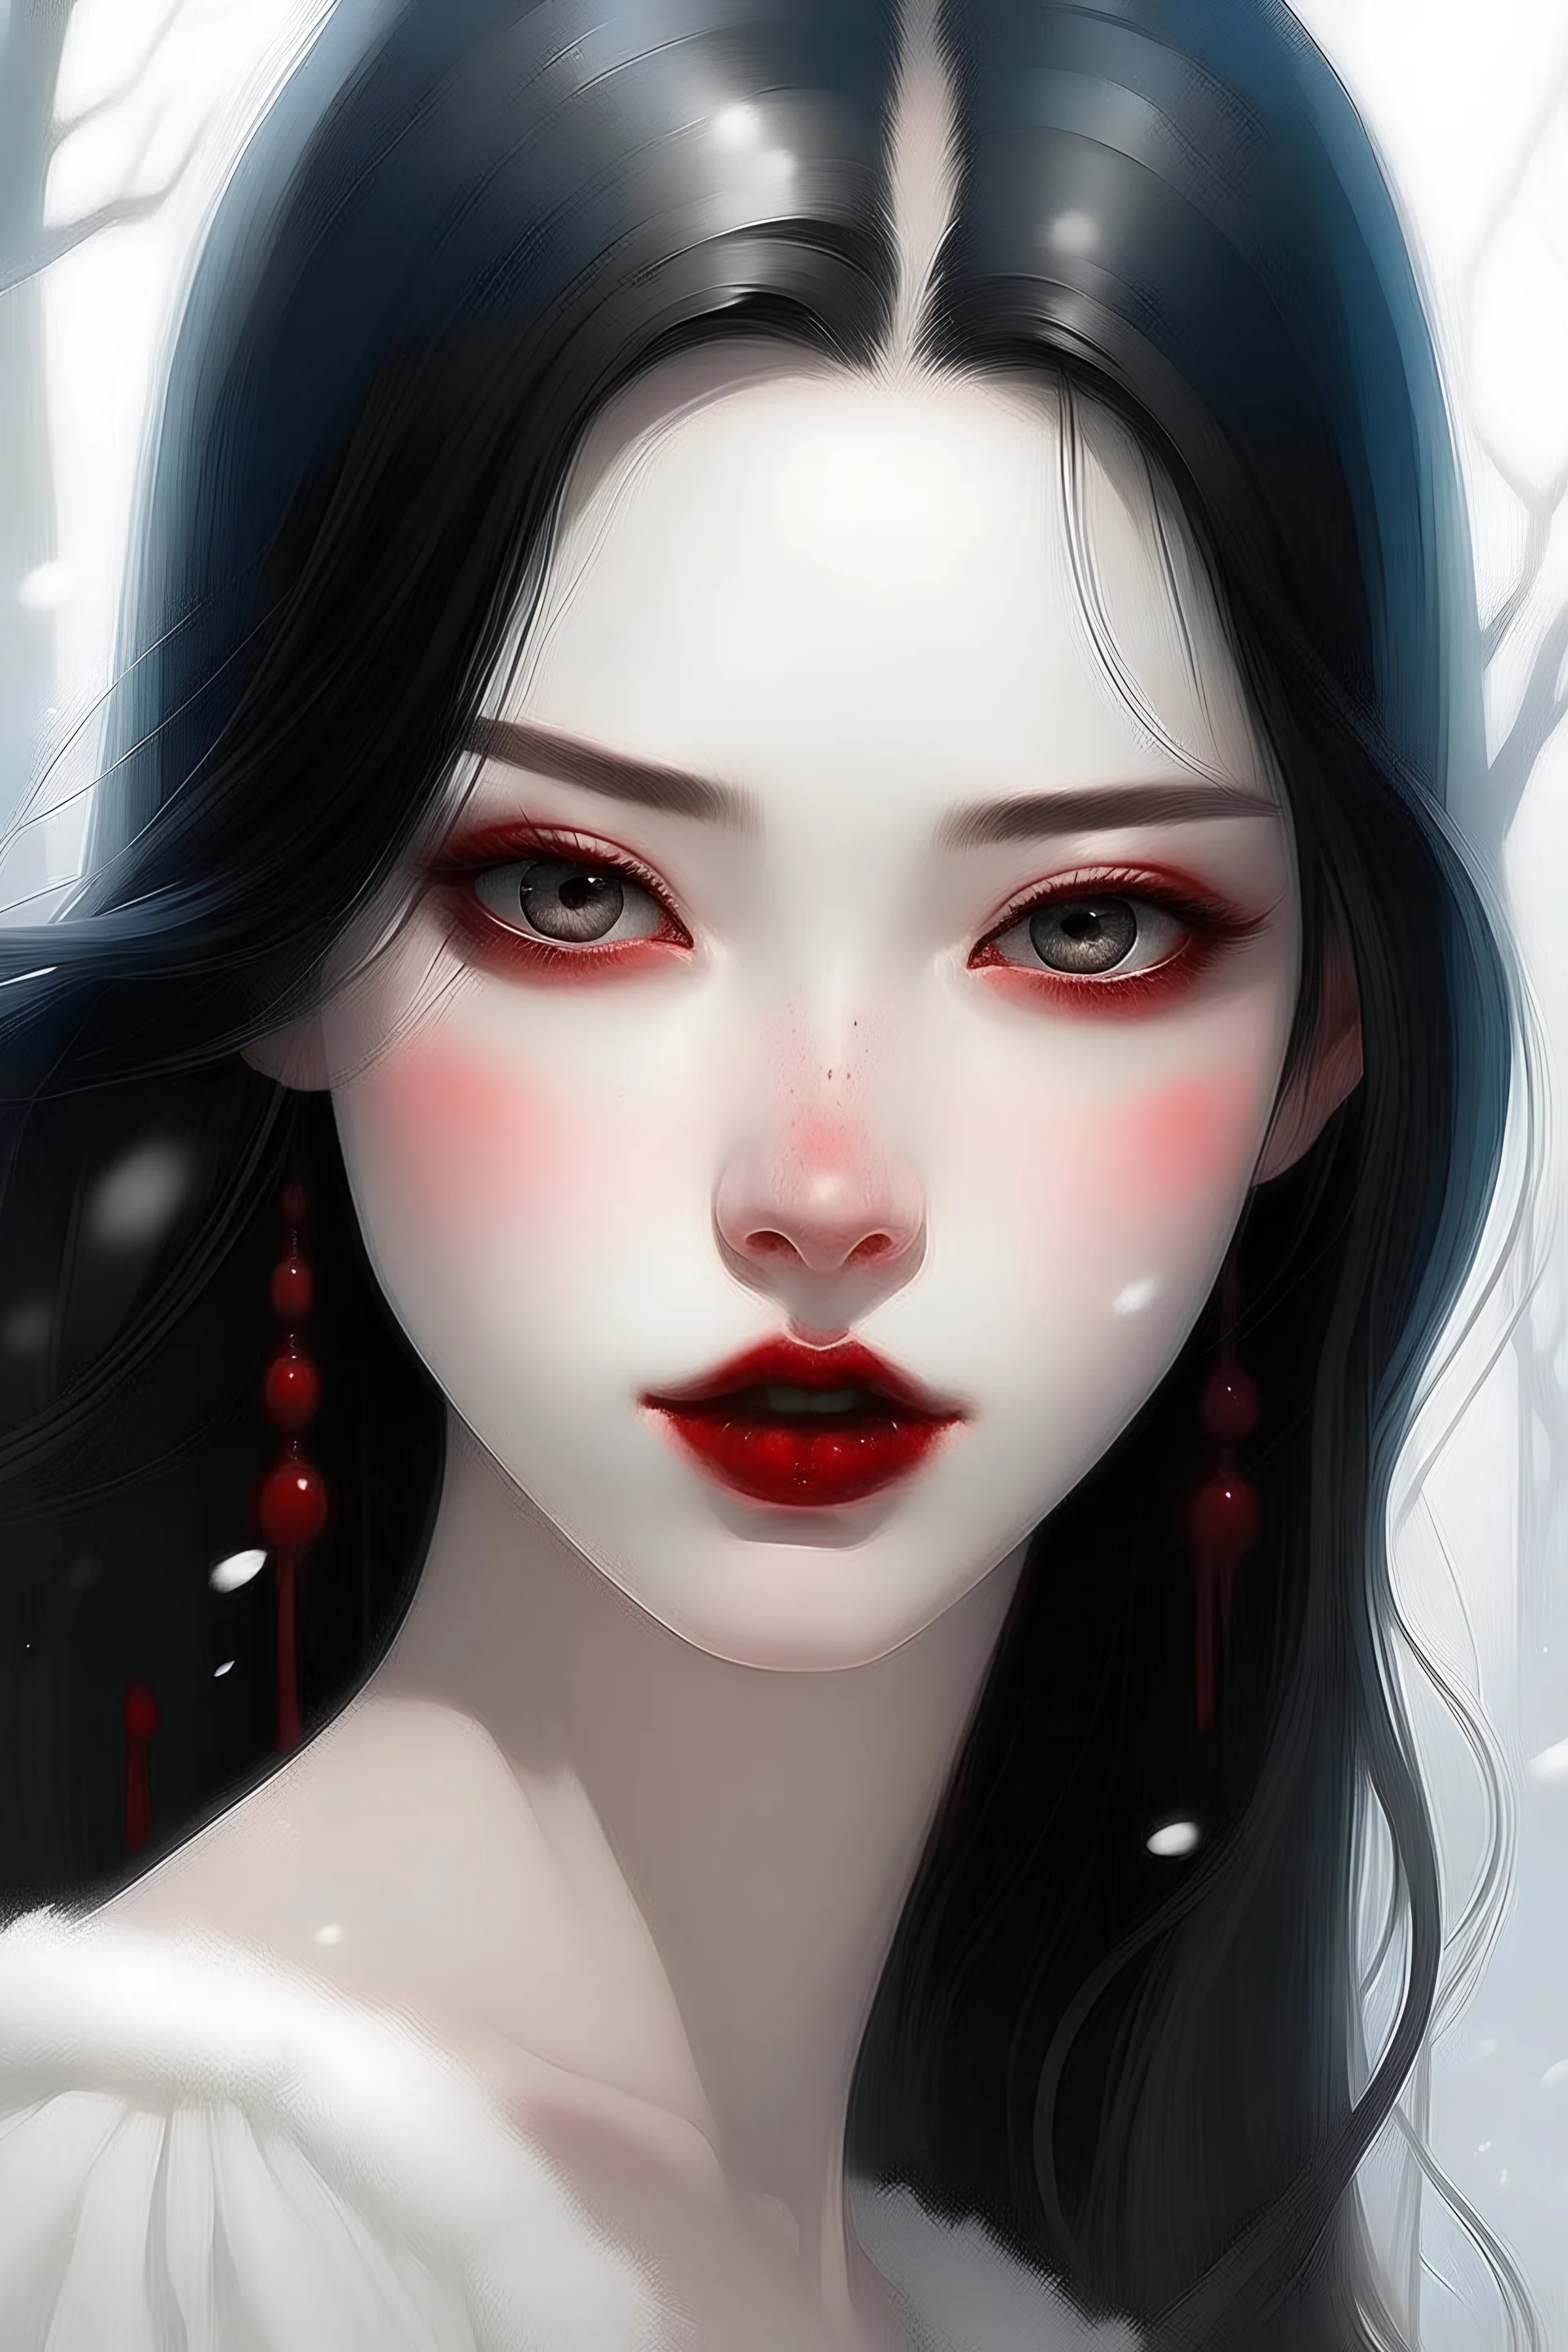 una niña con la piel tan blanca como la nieve, de labios carmesíes y cabello oscuro, con una dulzura en sus mejillas y ojos